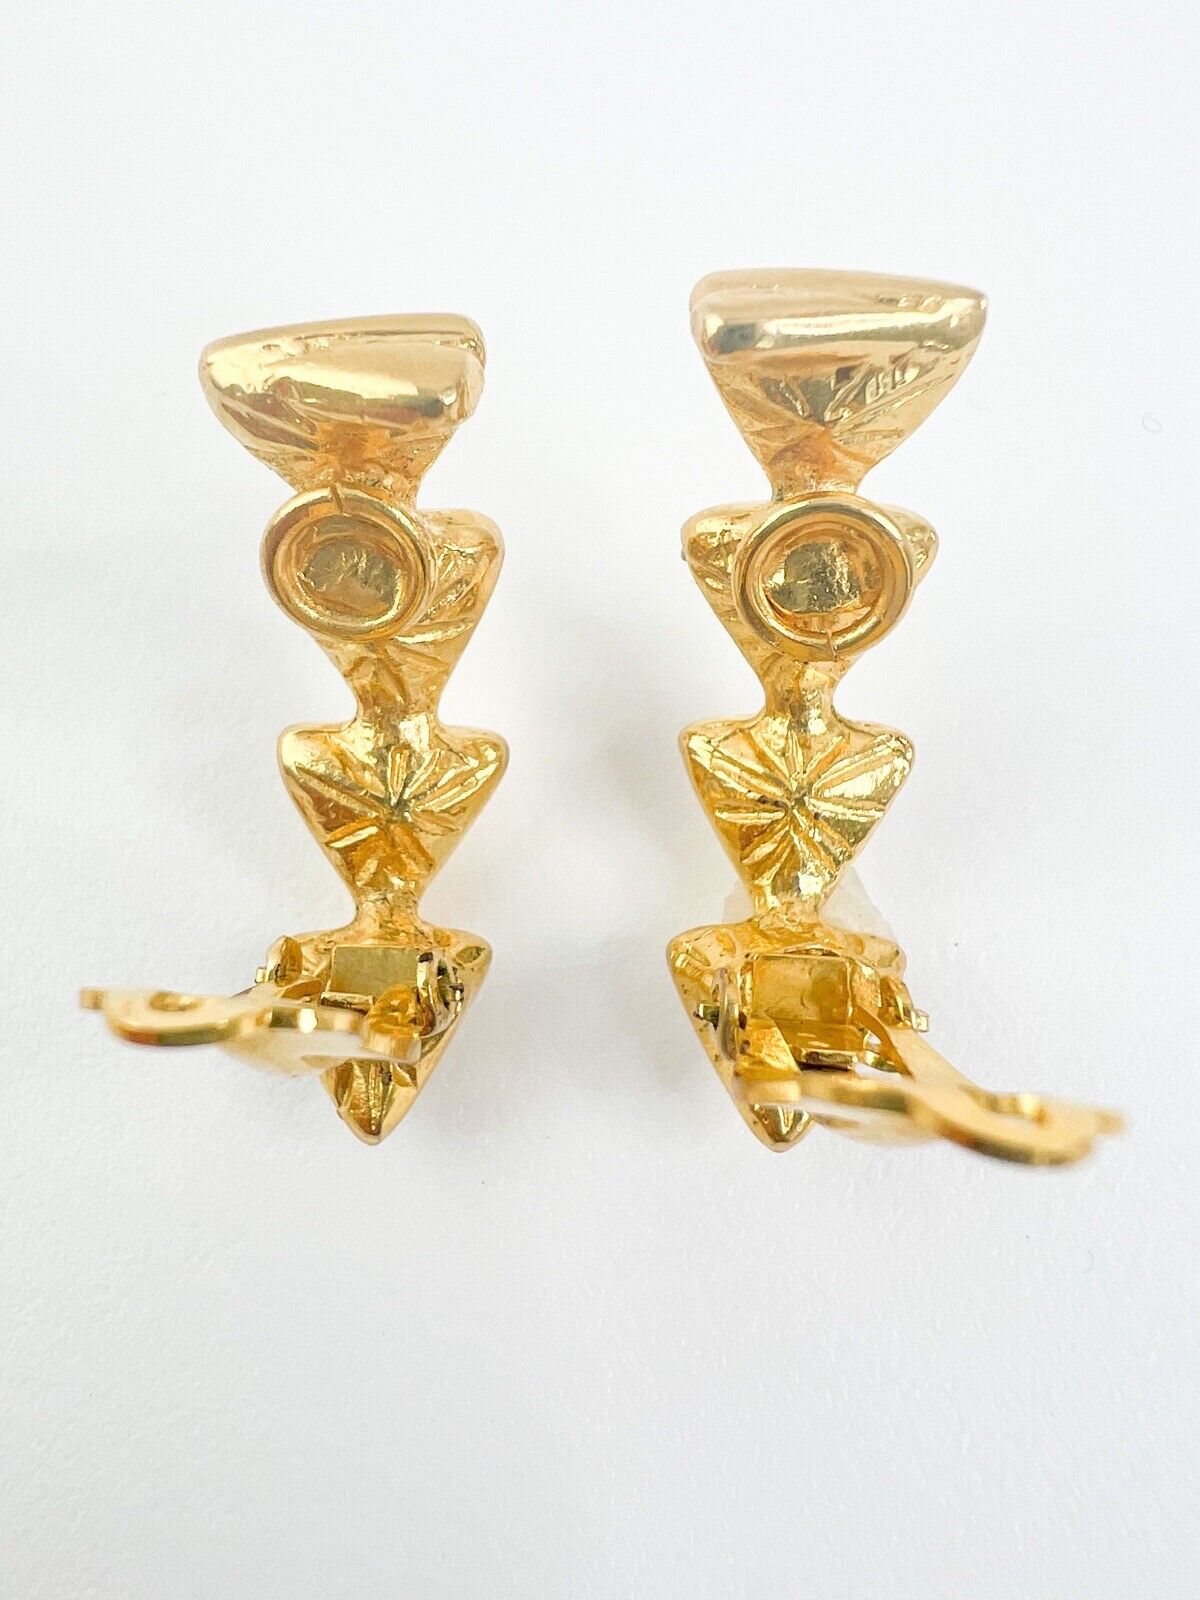 Vintage YSL Earrings, Yves Saint Laurent Earrings, Gift for her, Vintage Hoop earrings Gold, Earrings Clip On, Vintage Rhinestones